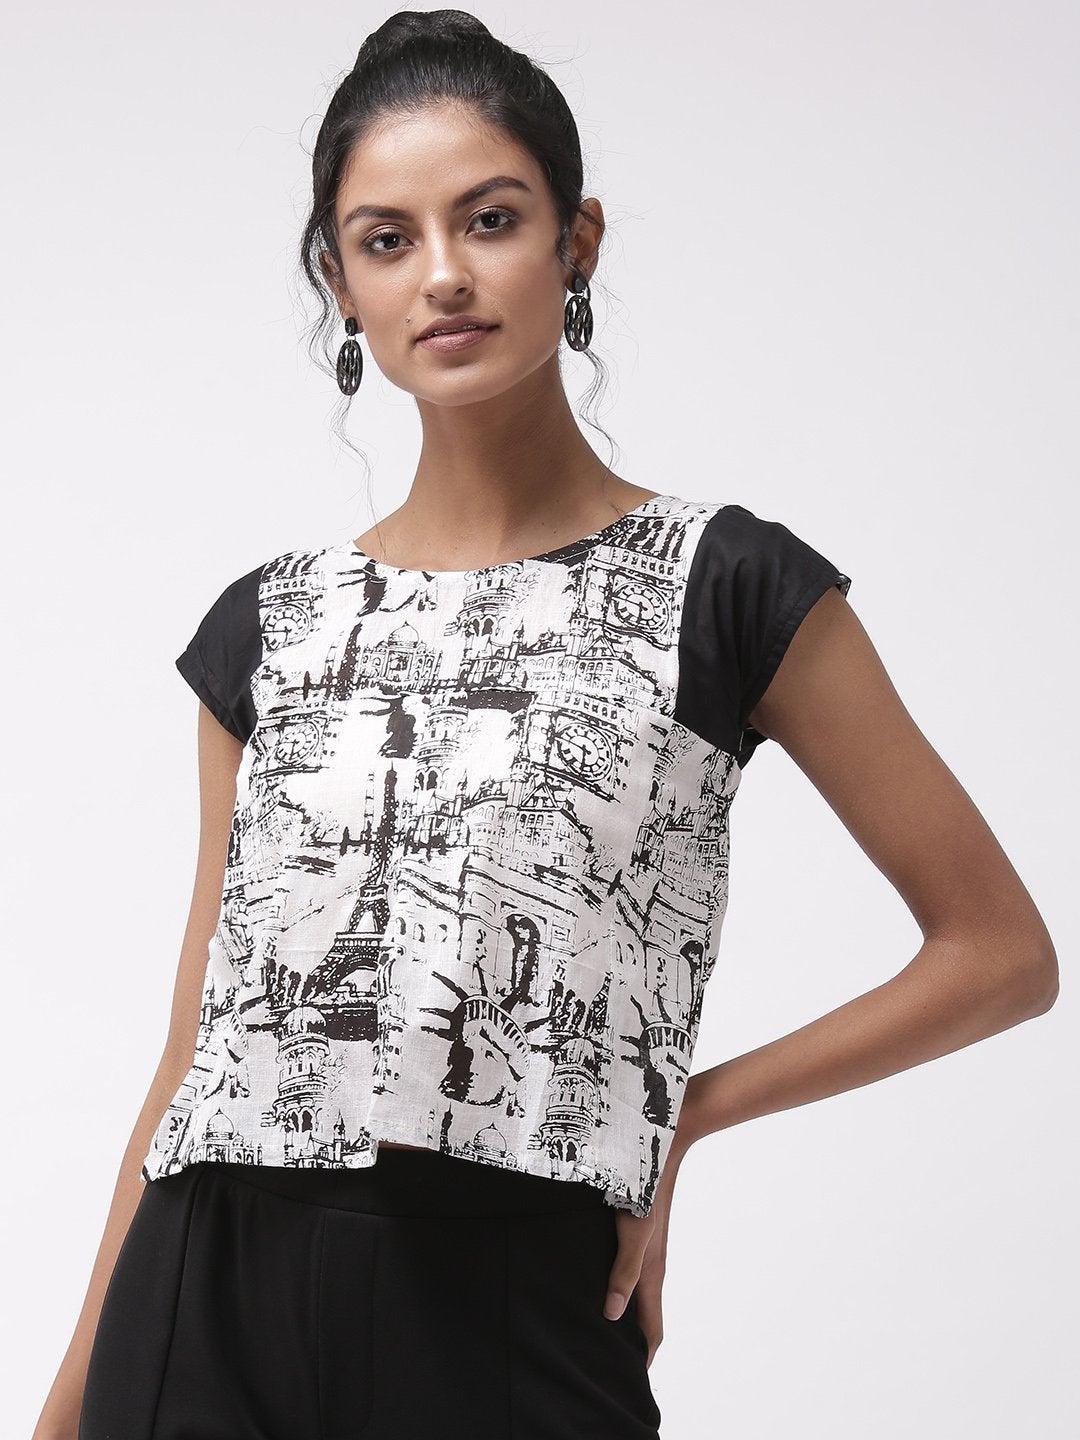 Women's Printed Top With Black Sleeves - InWeave